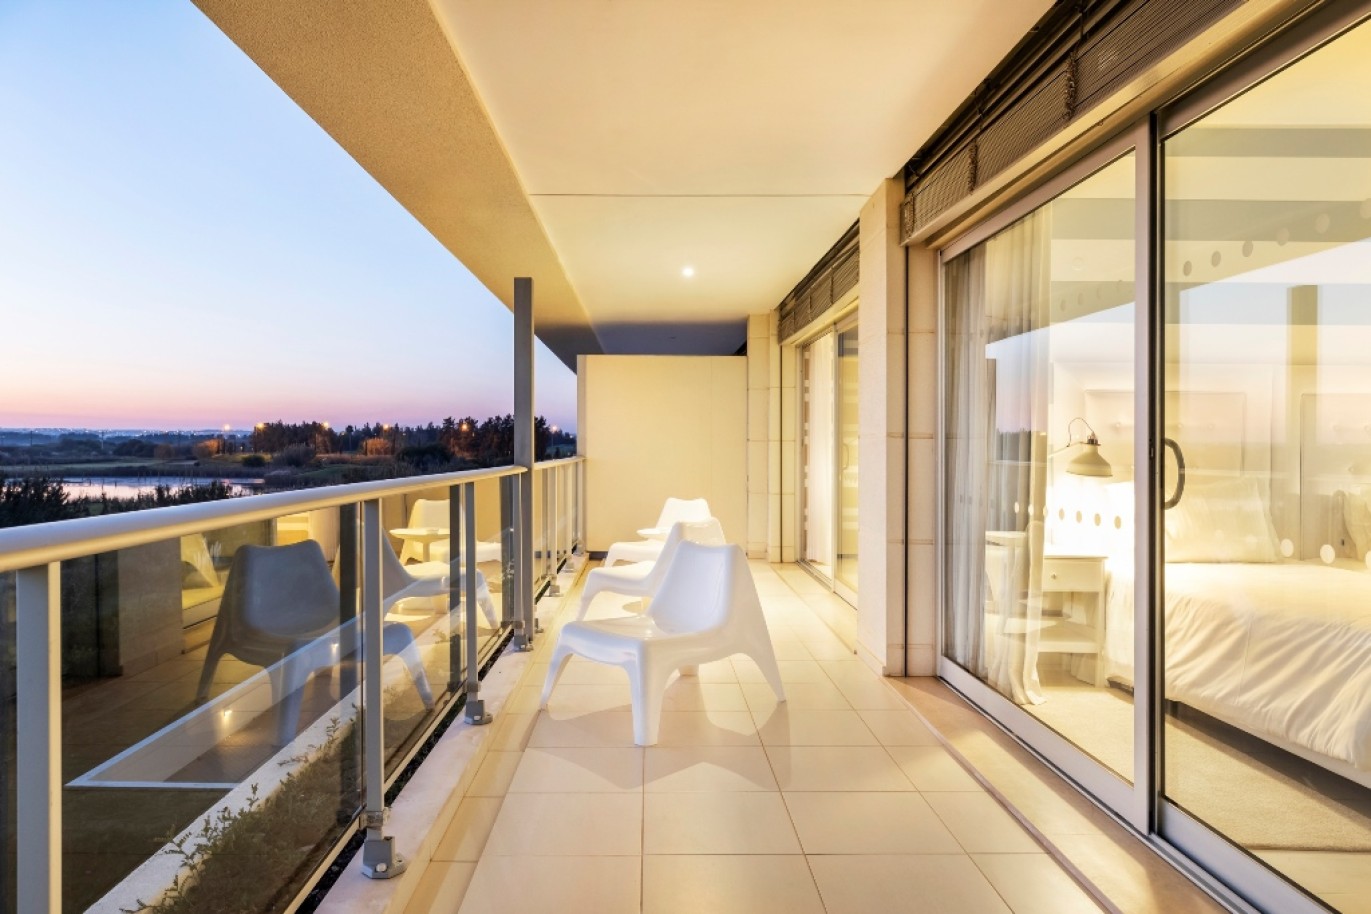 Moderno Duplex em Resort com piscina, para venda Vilamoura, Algarve_252268